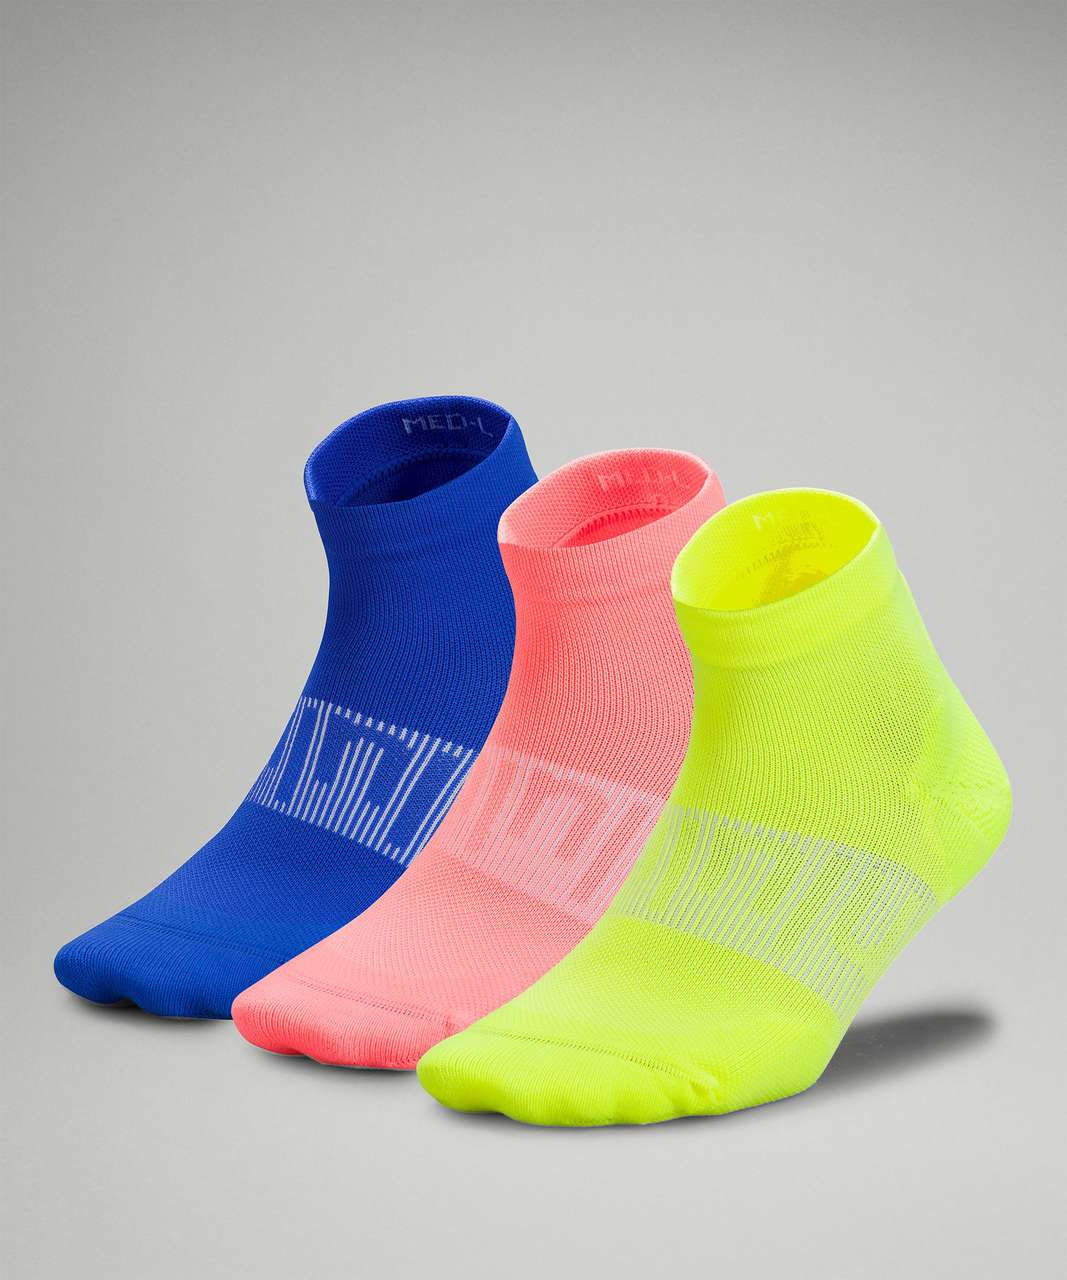 Lululemon Power Stride Ankle Sock 3 Pack - Highlight Yellow / Sunset / Blazer Blue